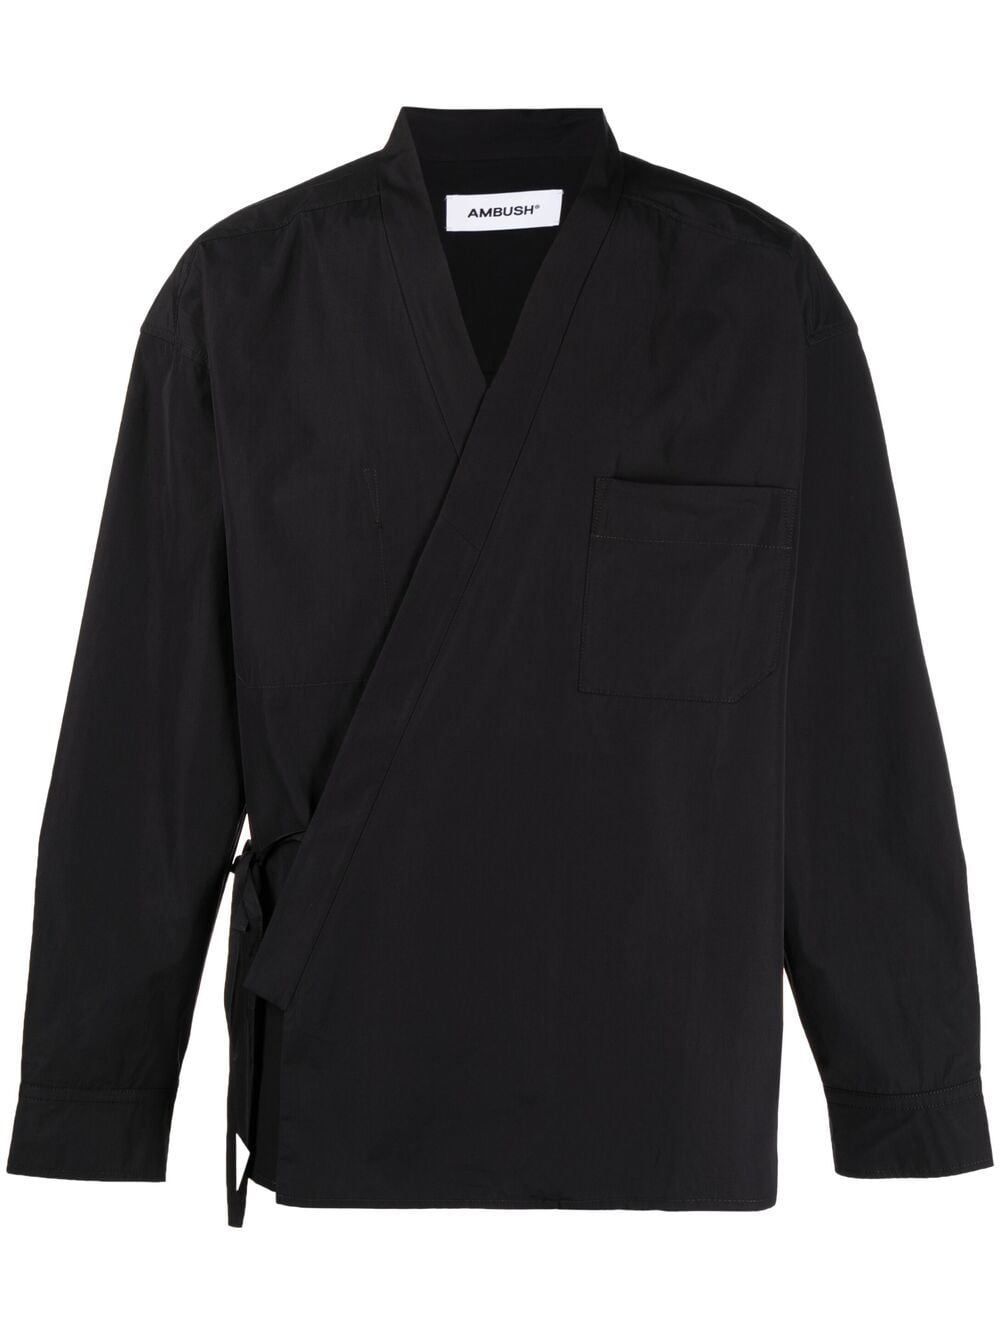 фото Ambush рубашка-кимоно с запахом